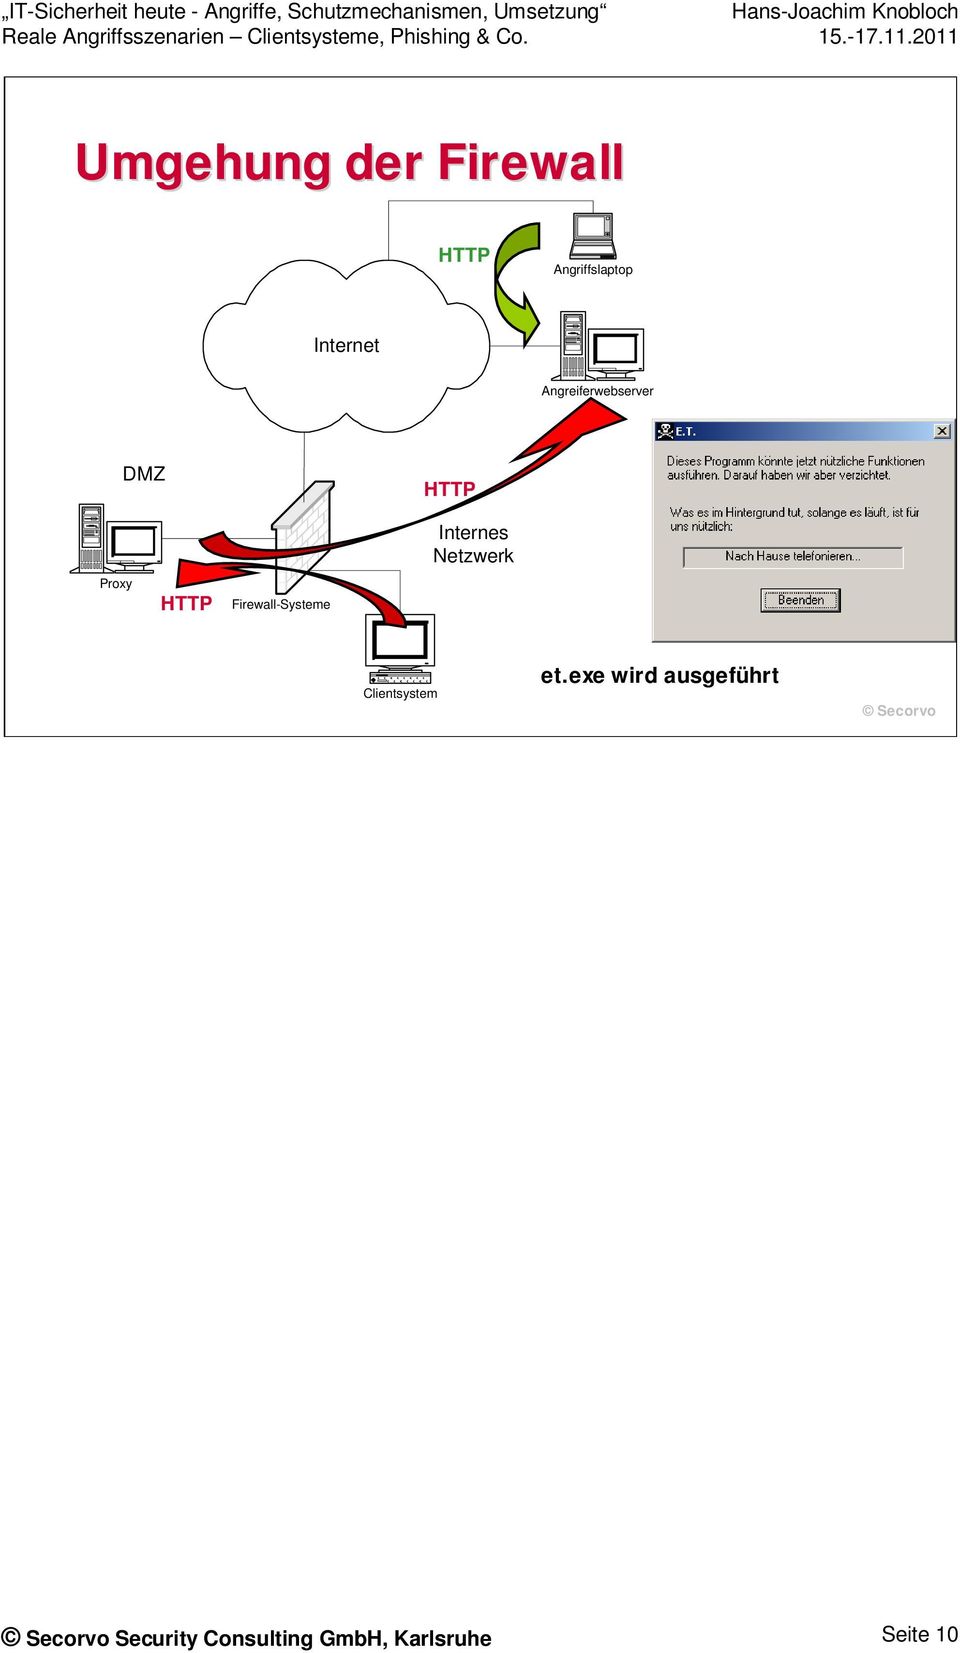 Firewall-Systeme Internes Netzwerk Clientsystem et.